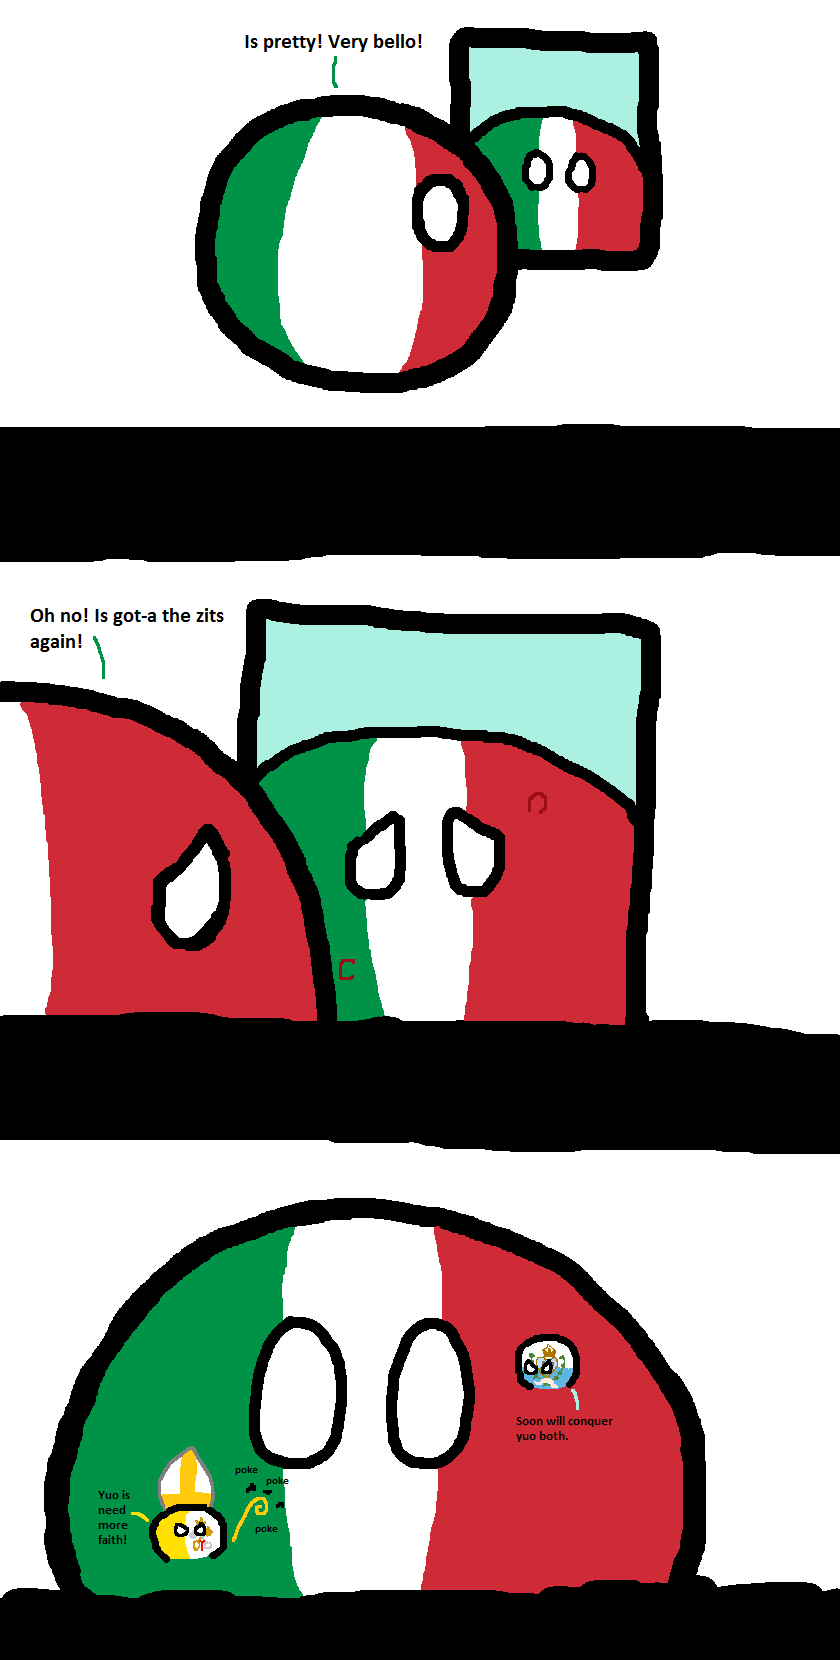 Italy's zits